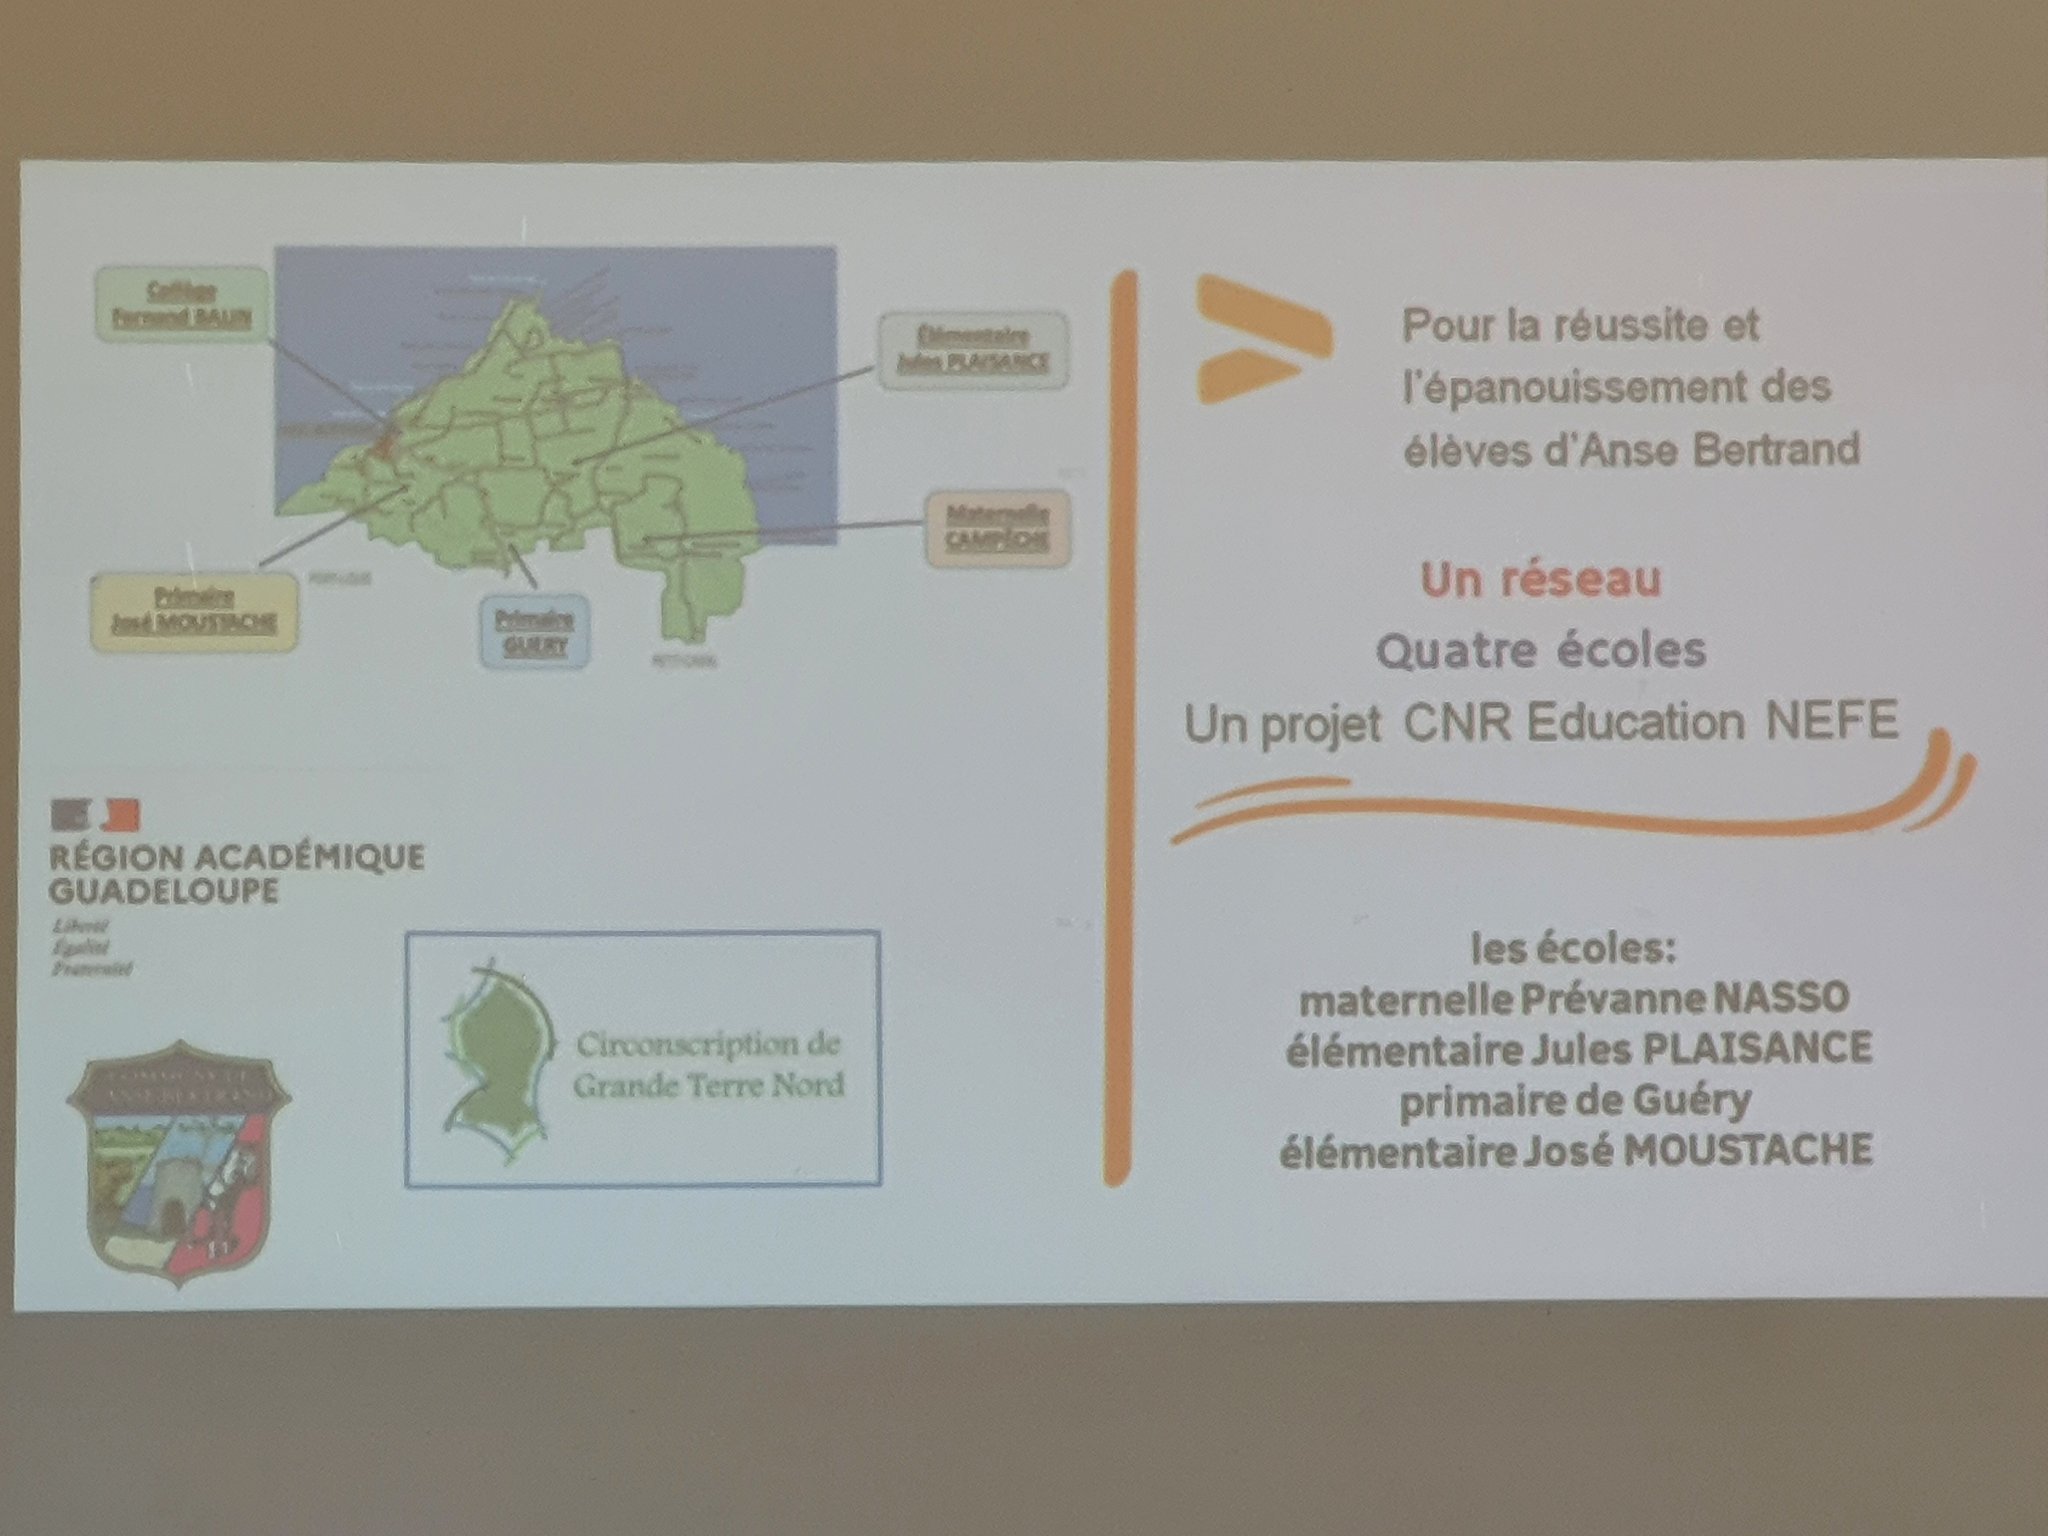 La maternelle  Région académique Guadeloupe